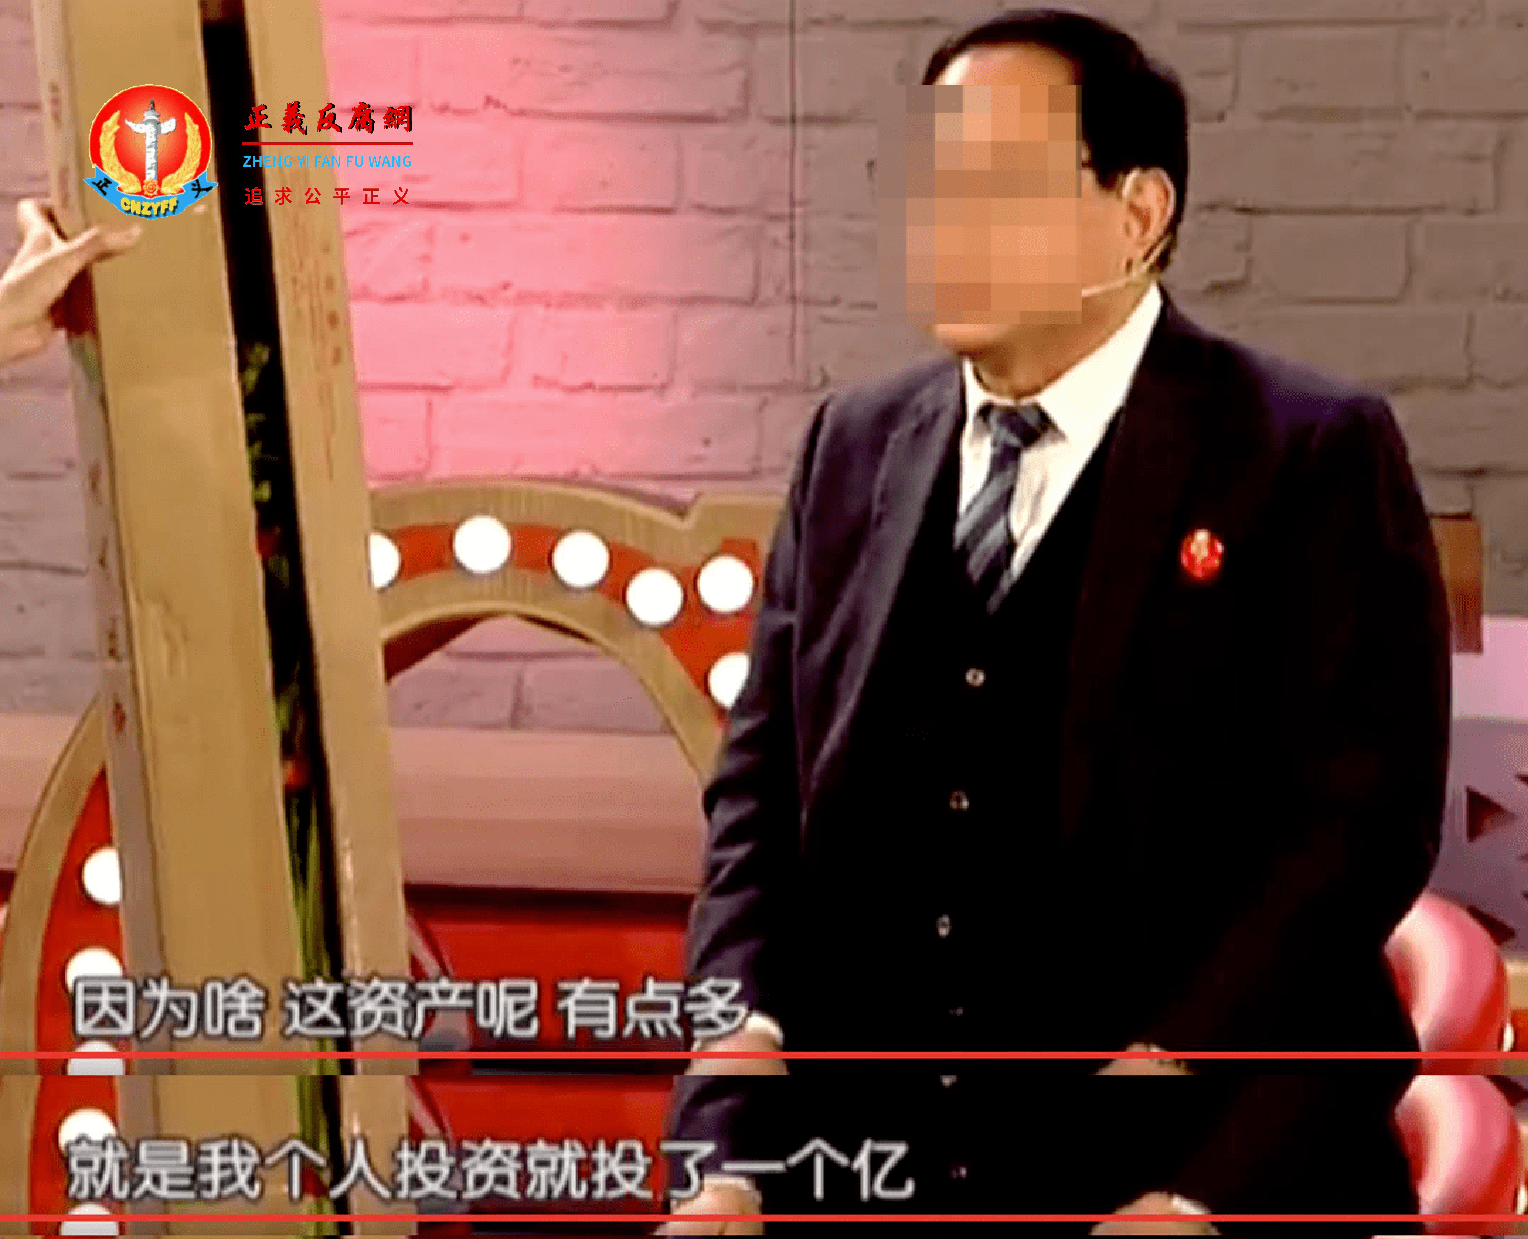 王先生在婚恋交友节目中的截图.png